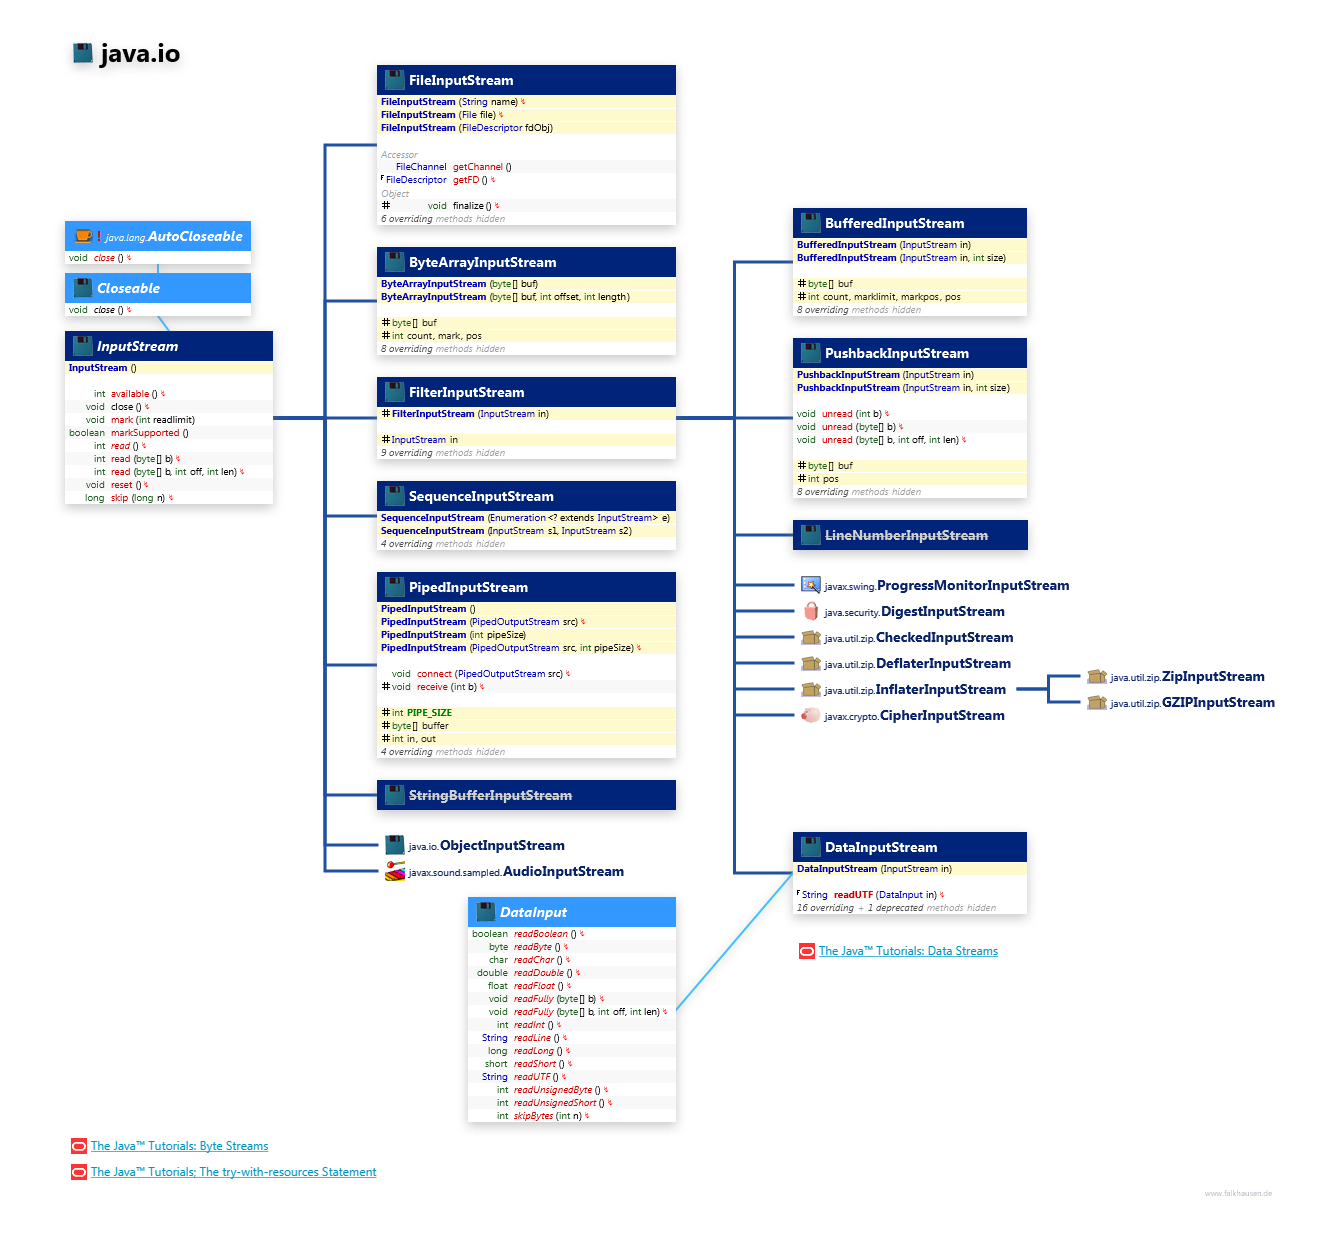 java.io InputStream class diagram and api documentation for Java 7